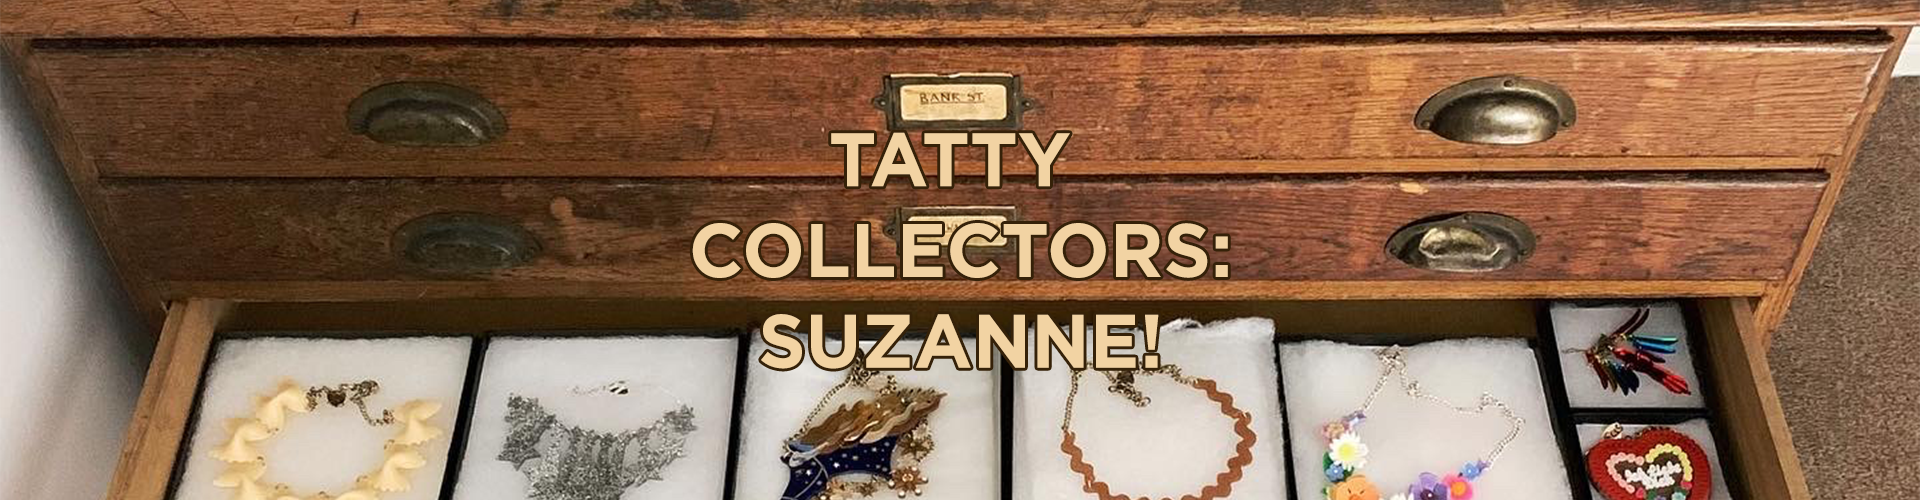 Tatty Collectors: Suzanne!